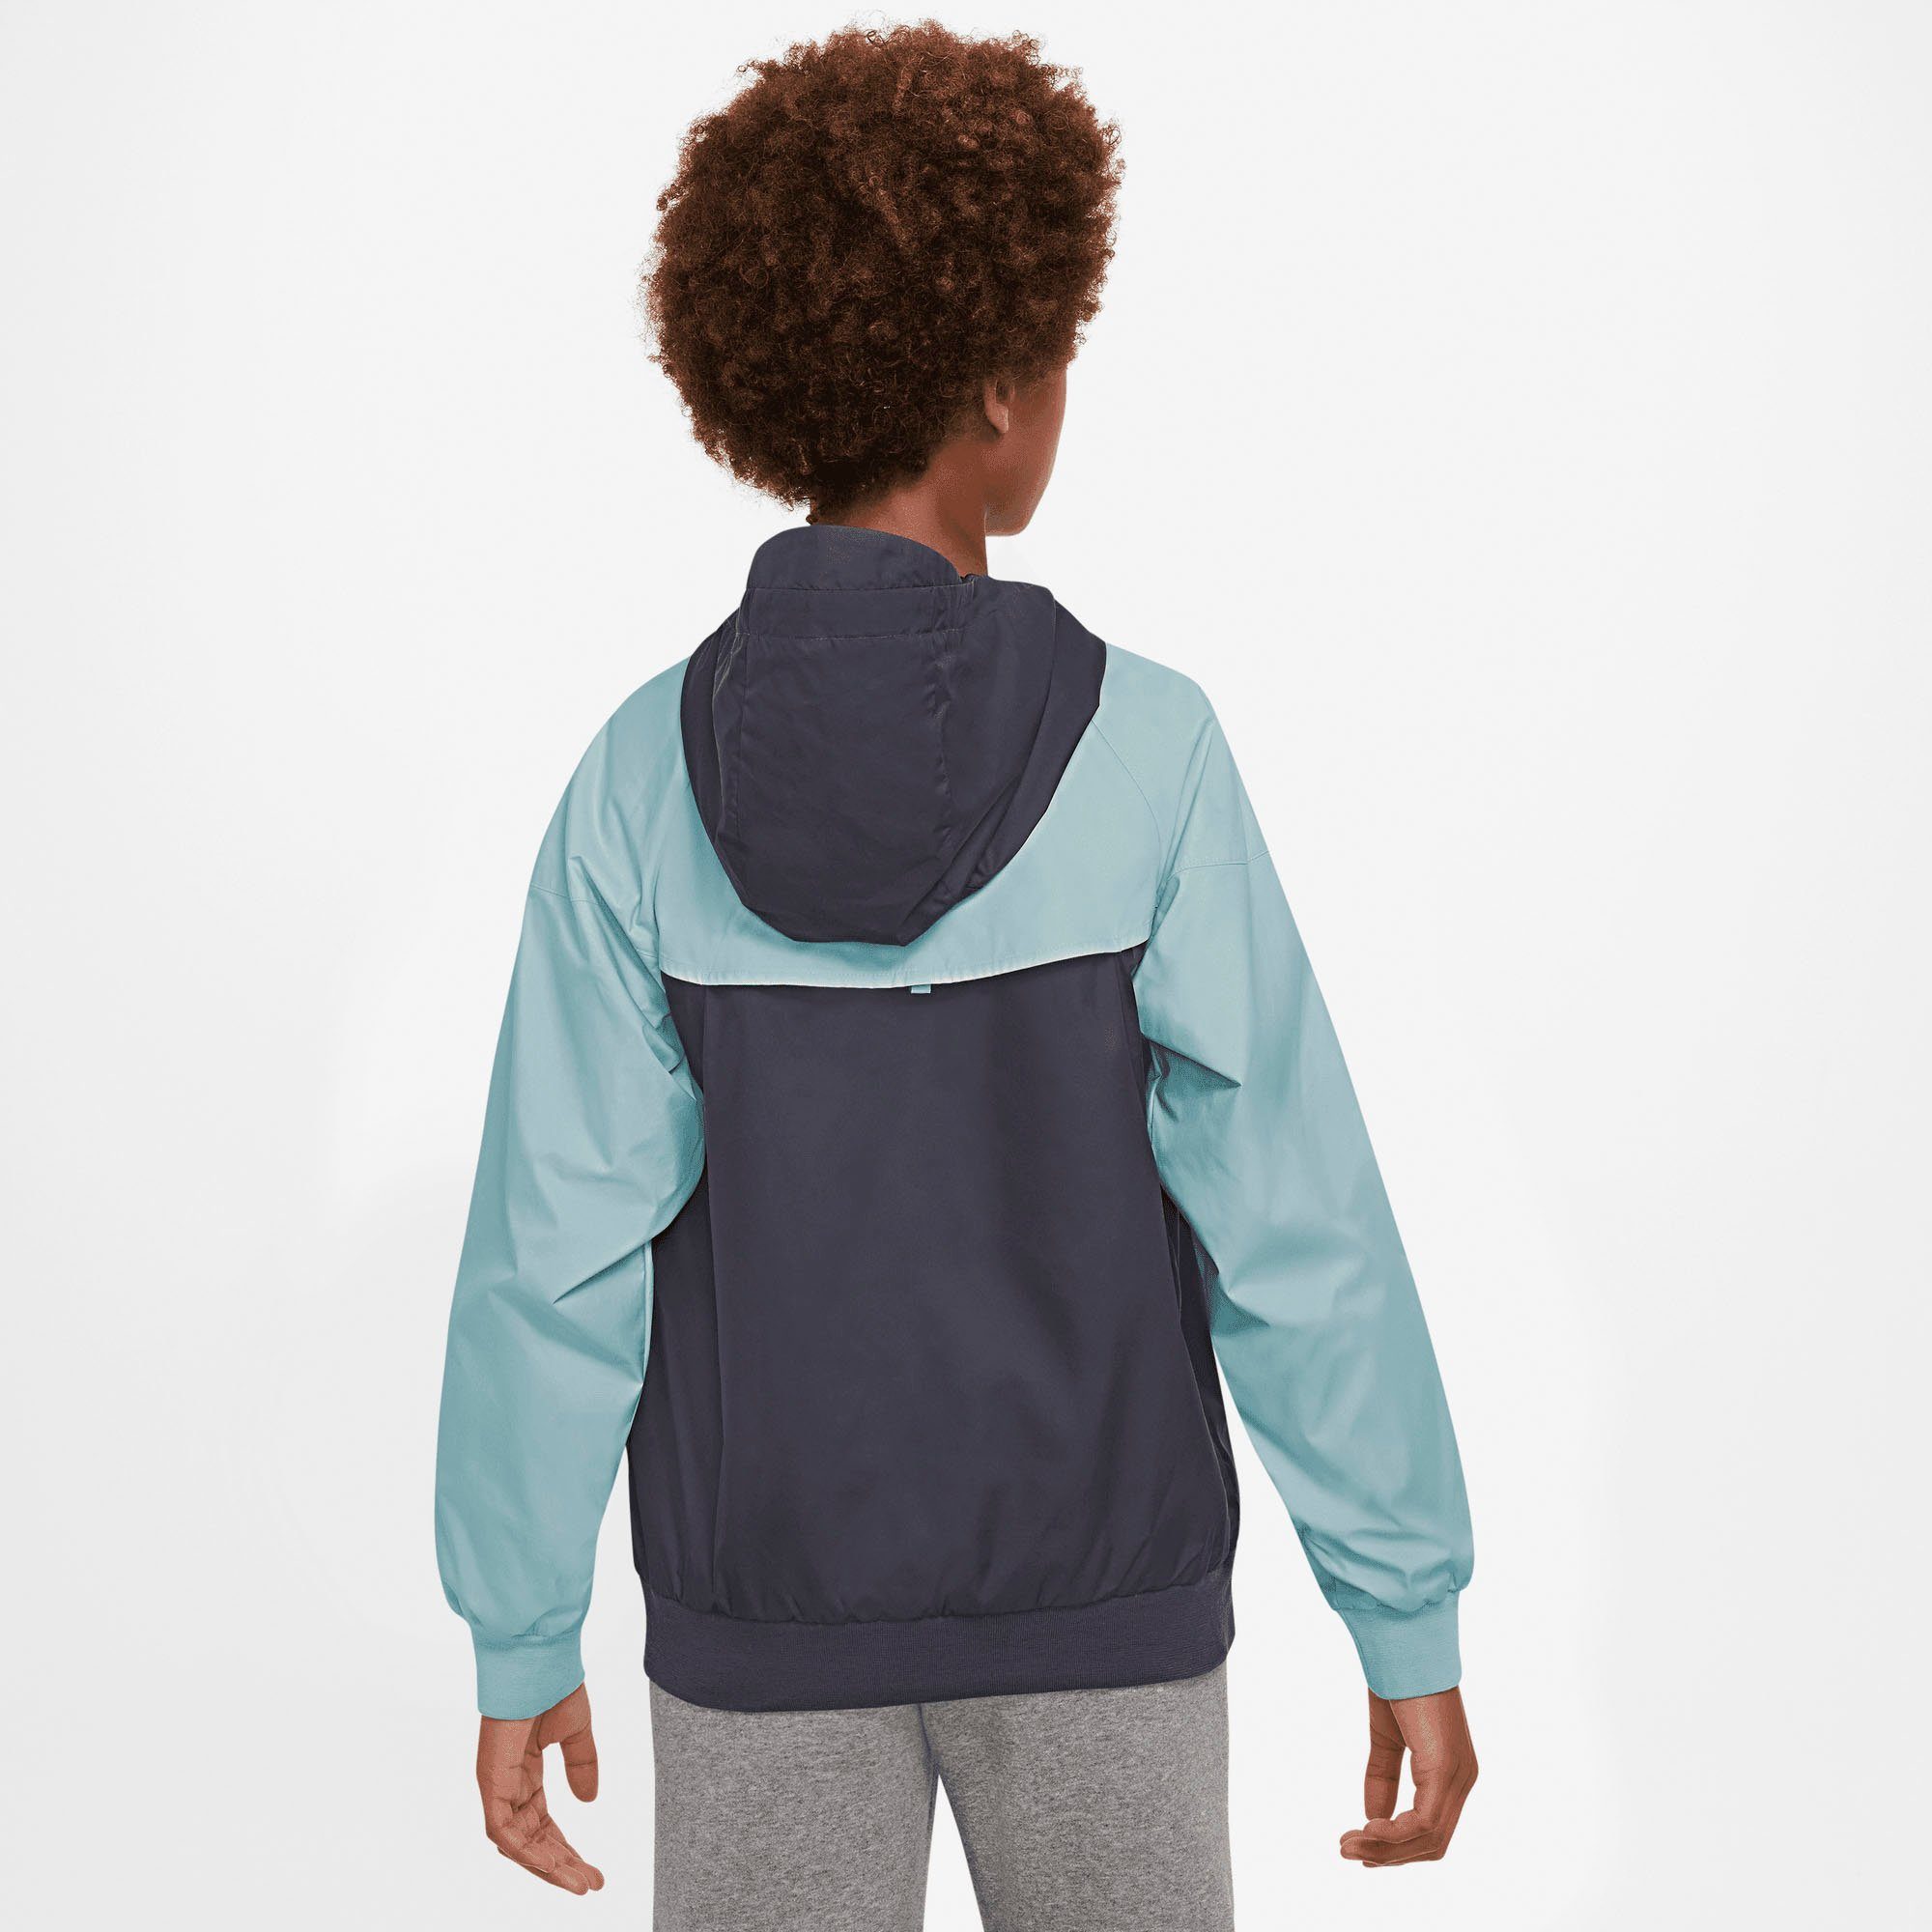 grau Nike Sweatjacke Kids' Jacket Windrunner Sportswear (Boys) Big